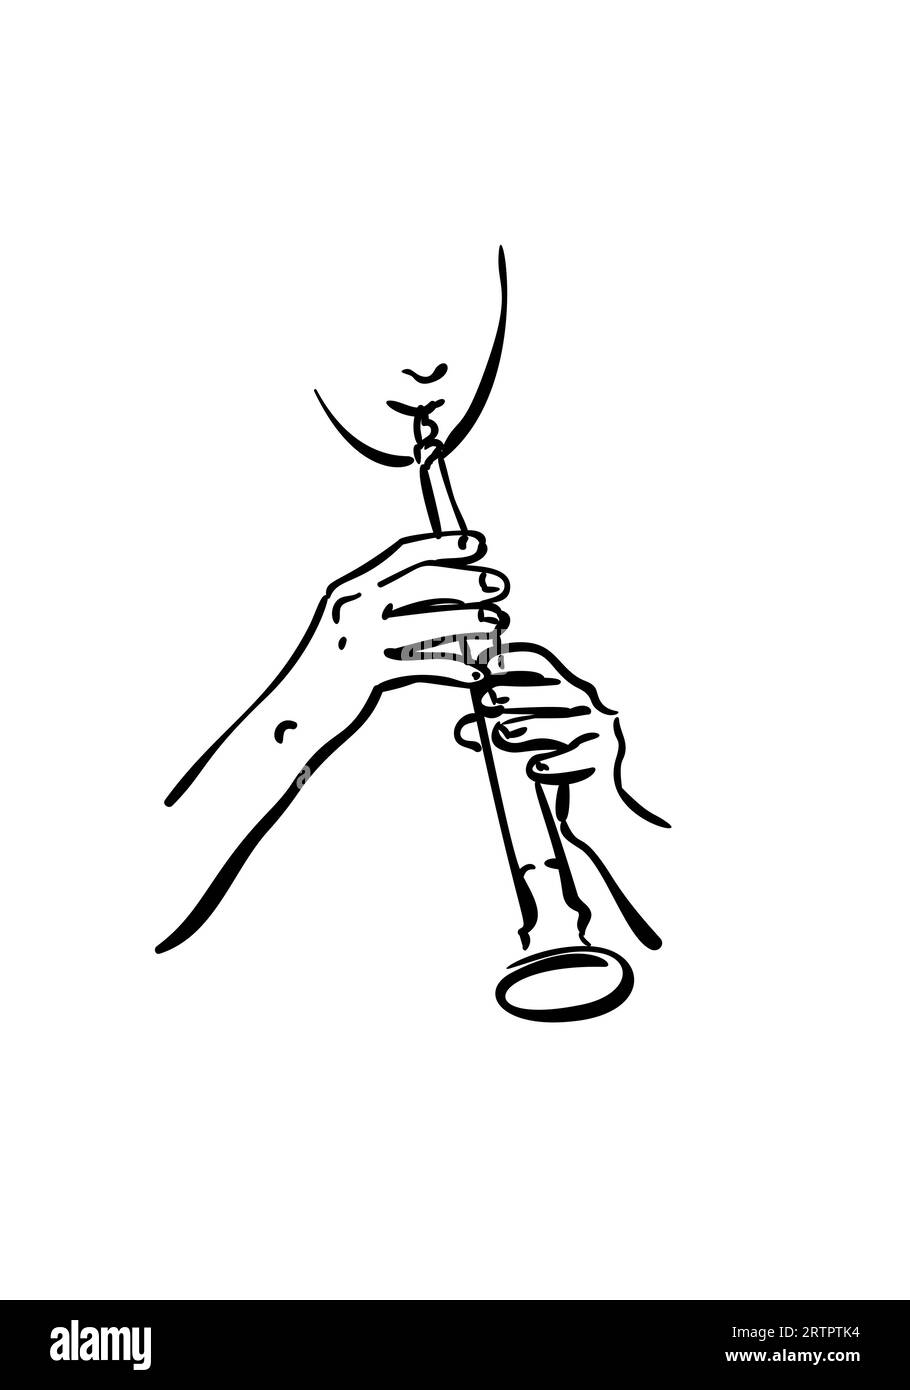 Homme jouant de la flûte, dessin d'un instrument de musique à vent avec les mains isolées, Vector esquisse linéaire simple, illustration dessinée à la main Illustration de Vecteur